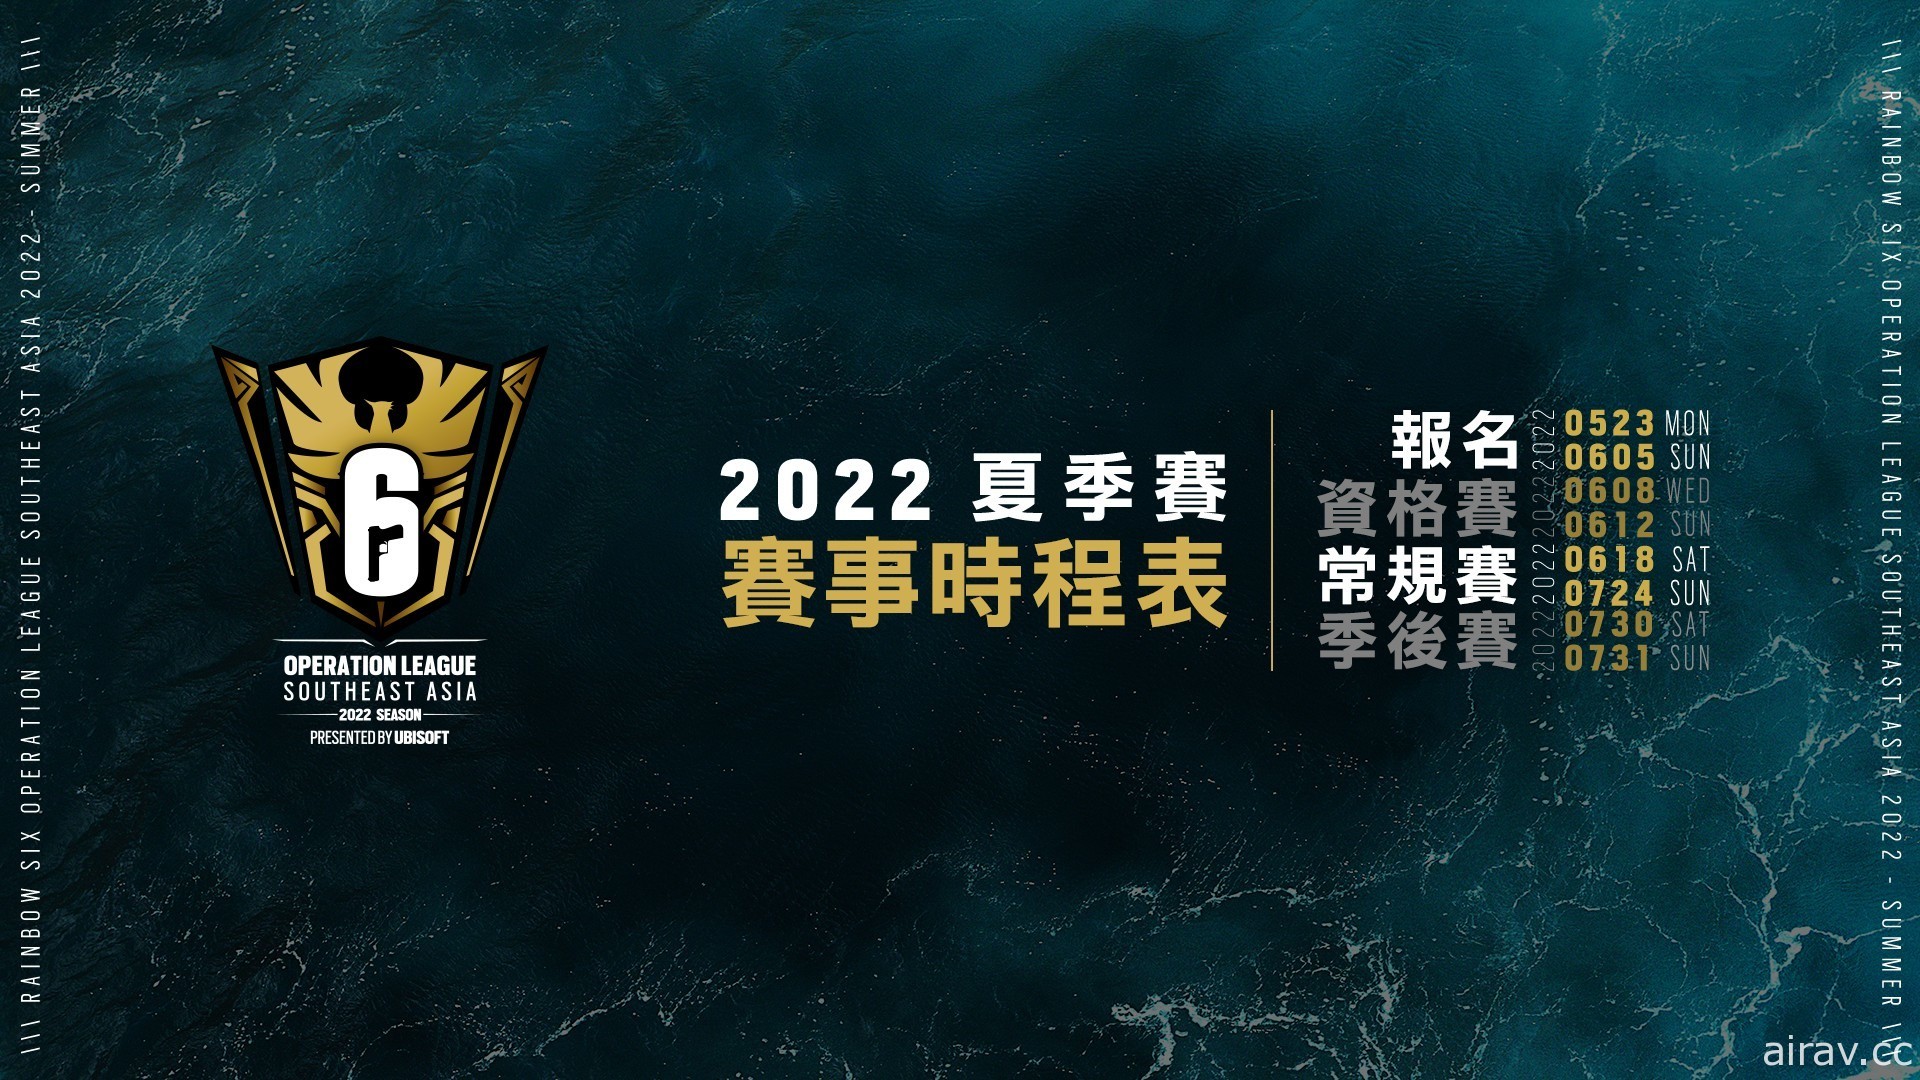 《虹彩六号》全新整合“东南亚菁英联赛”2022 夏季赛 5/23 正式展开